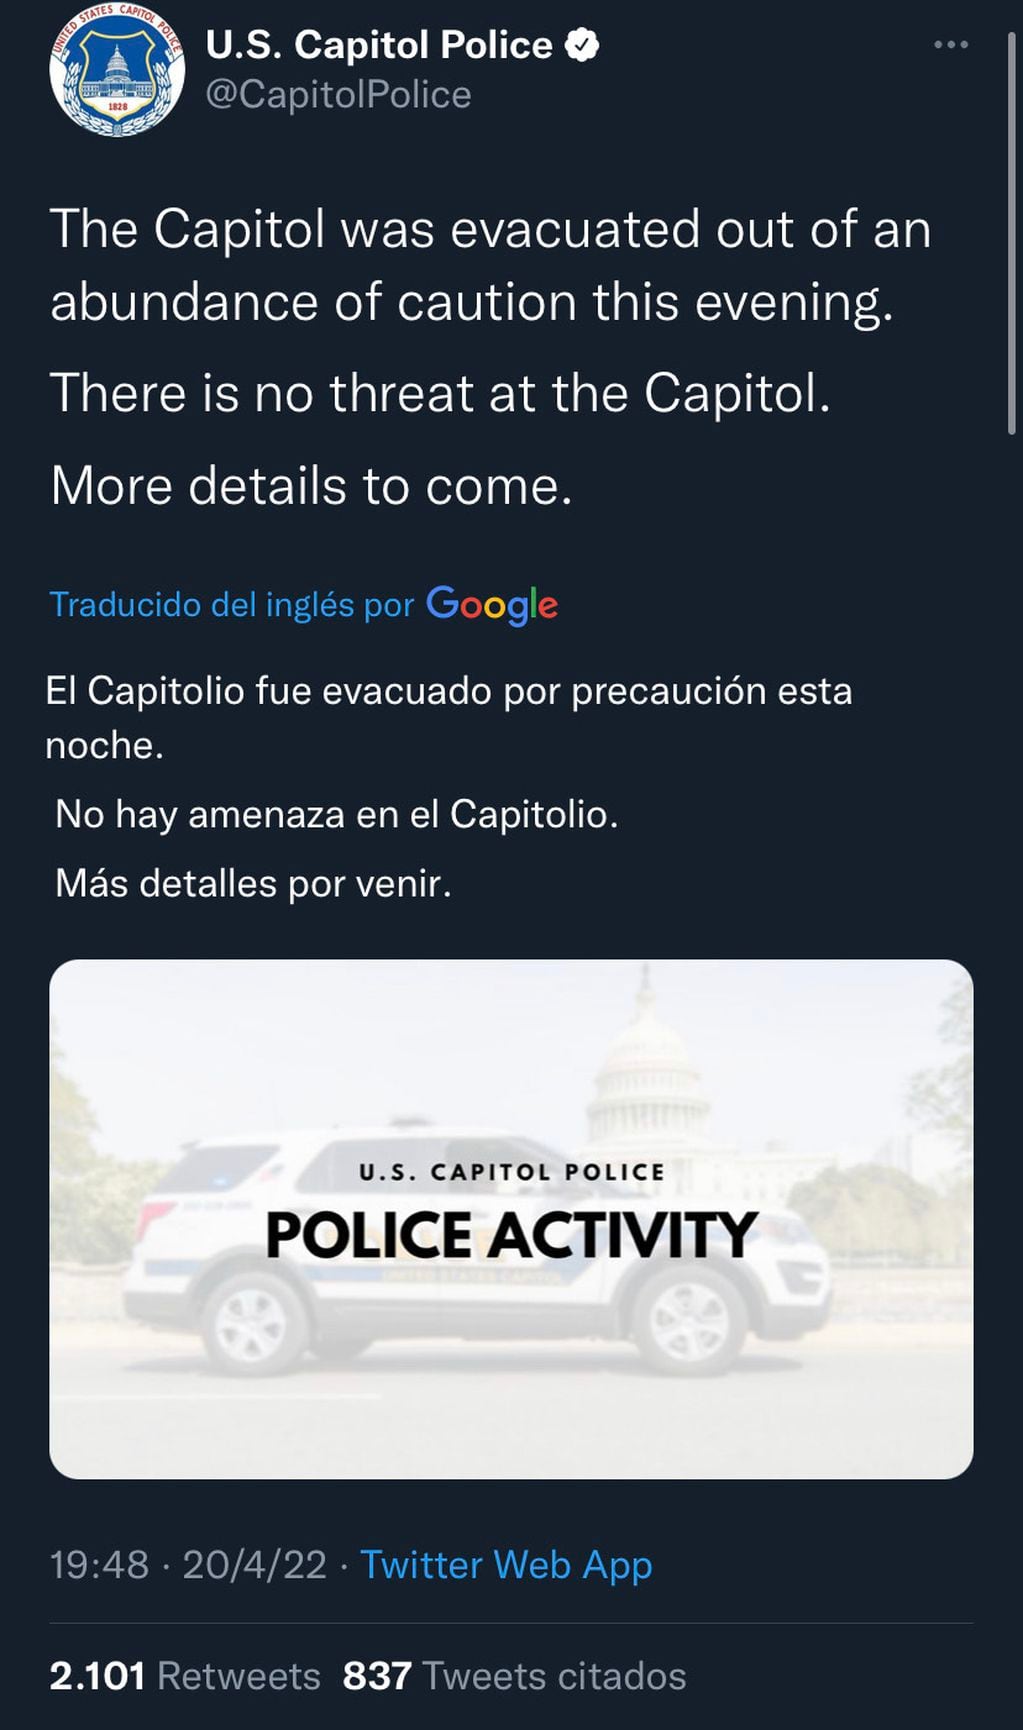 El tweet que publicó la cuenta oficial de la Policía del Capitolio.